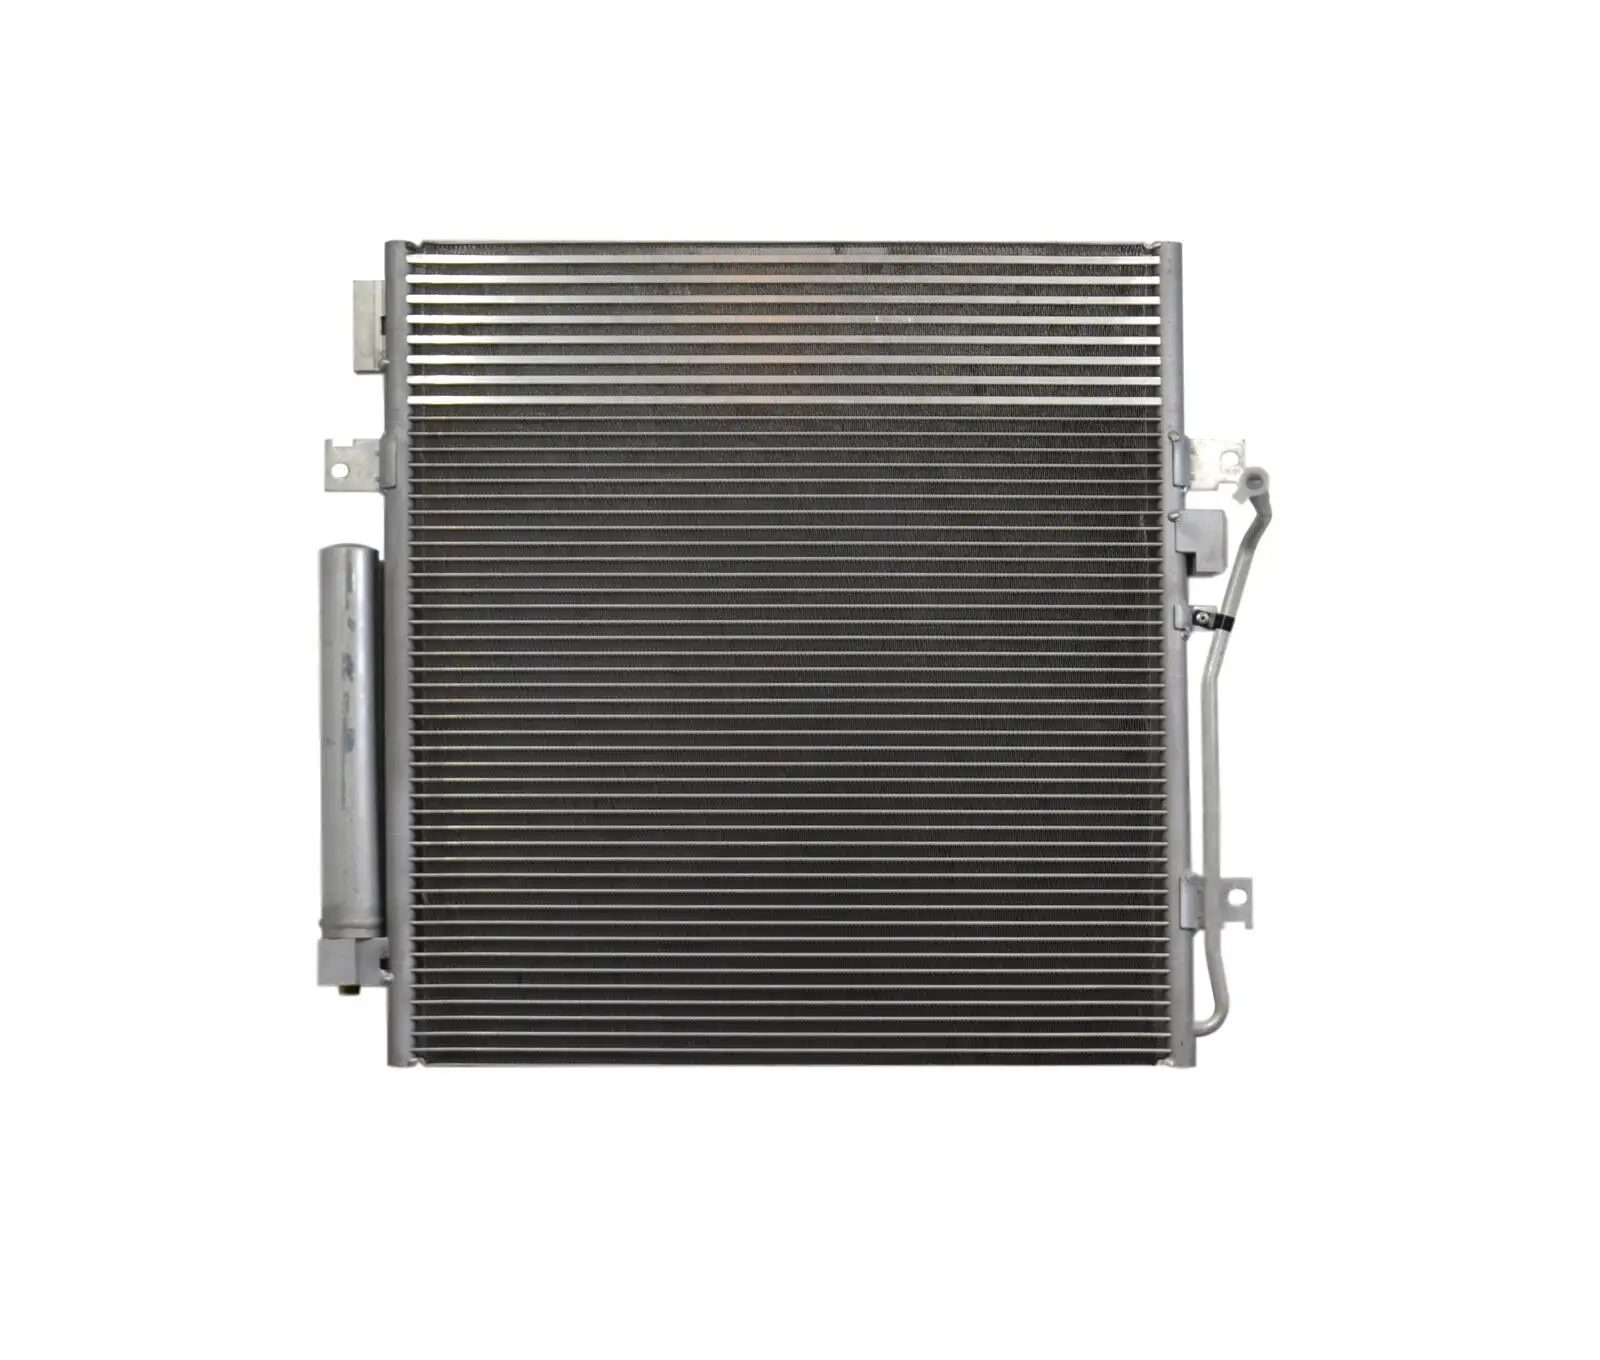 68033237AB Dod-ge nitro per autoveicoli aria condizionata condensazione evaporatore radiatore